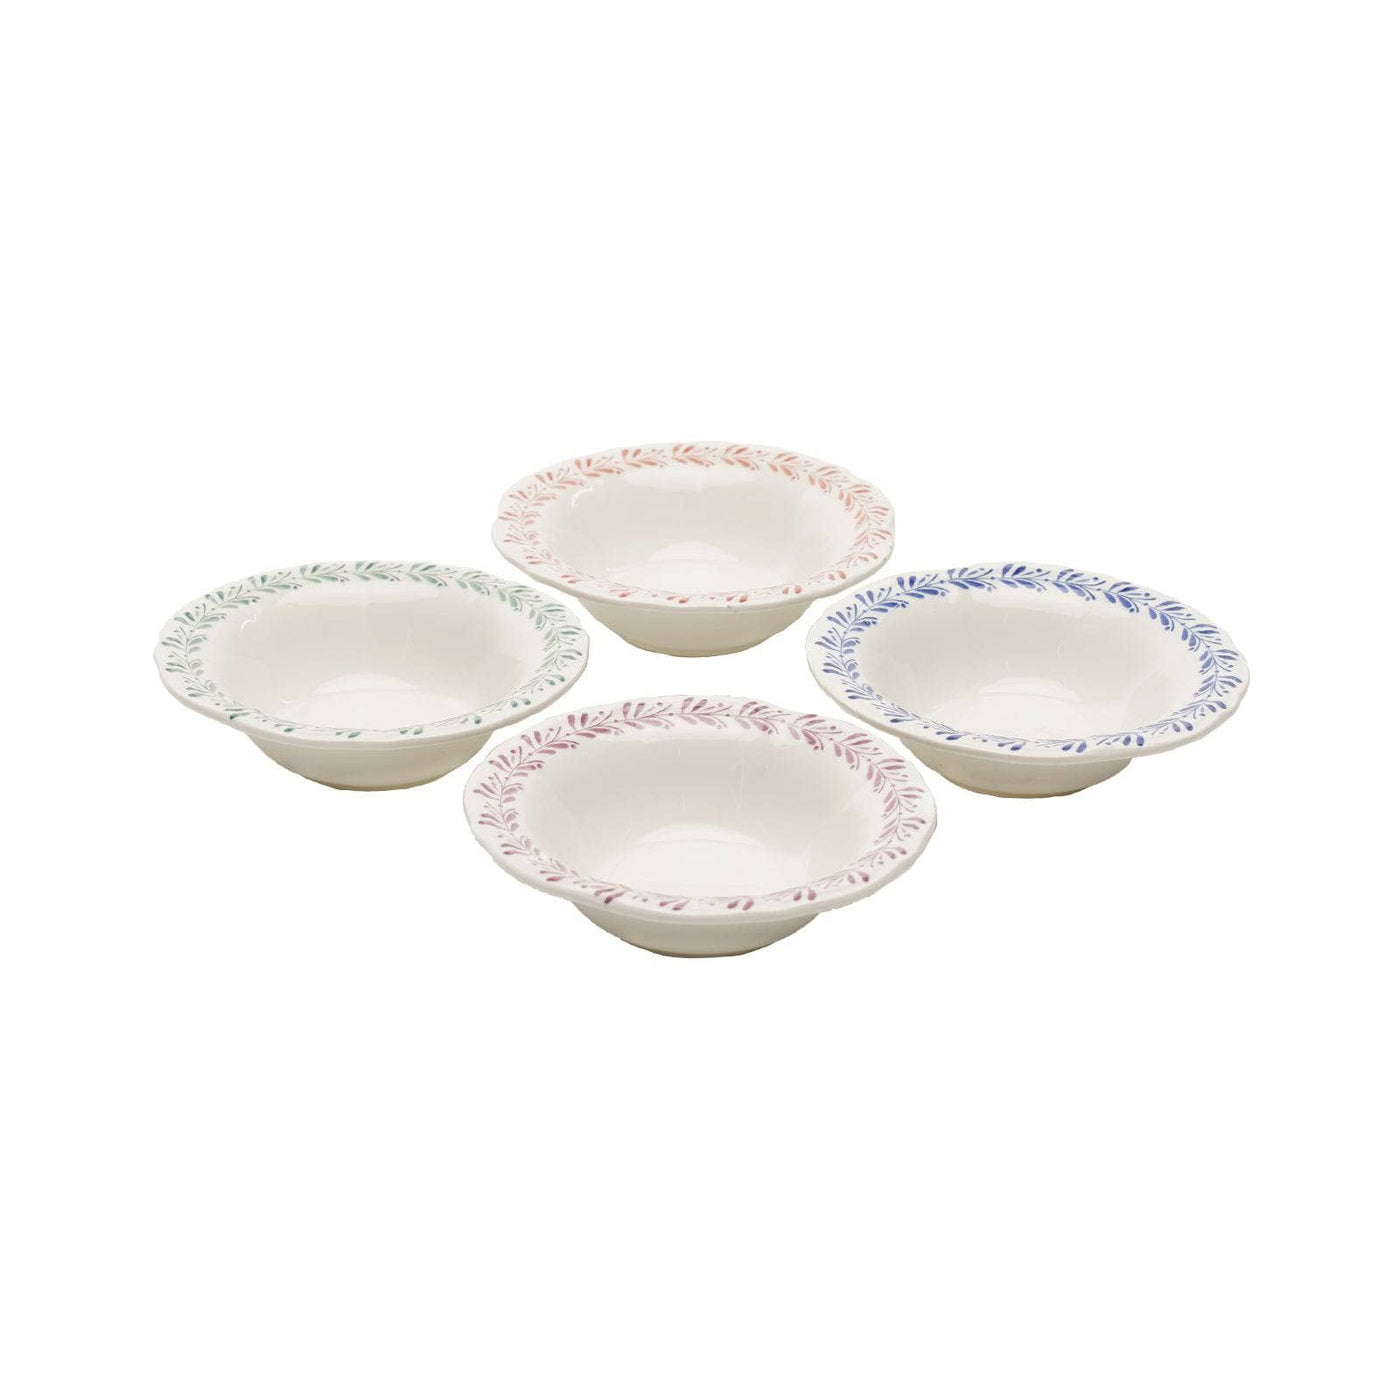 Coraline Set of 4 Bowls, Mix, 17 cm Bowls sazy.com